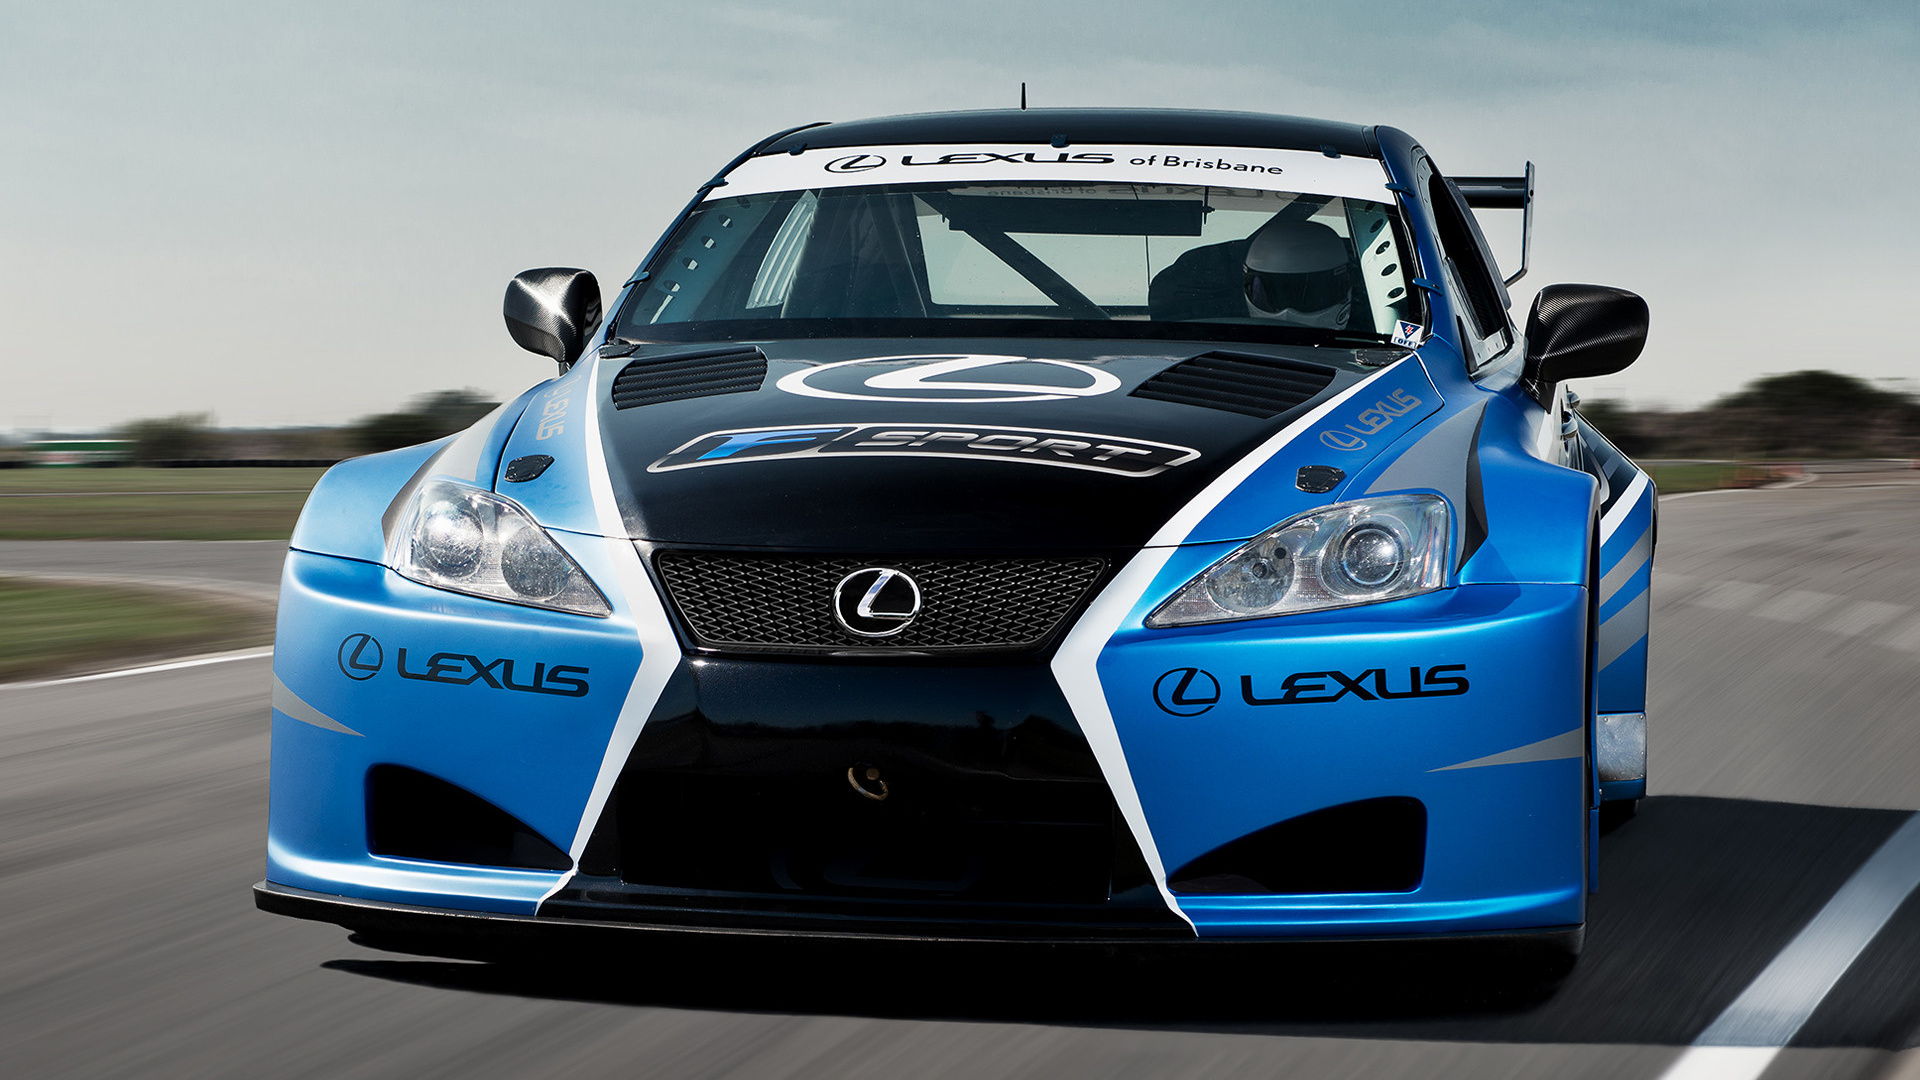 2013 Lexus IS F Race Car